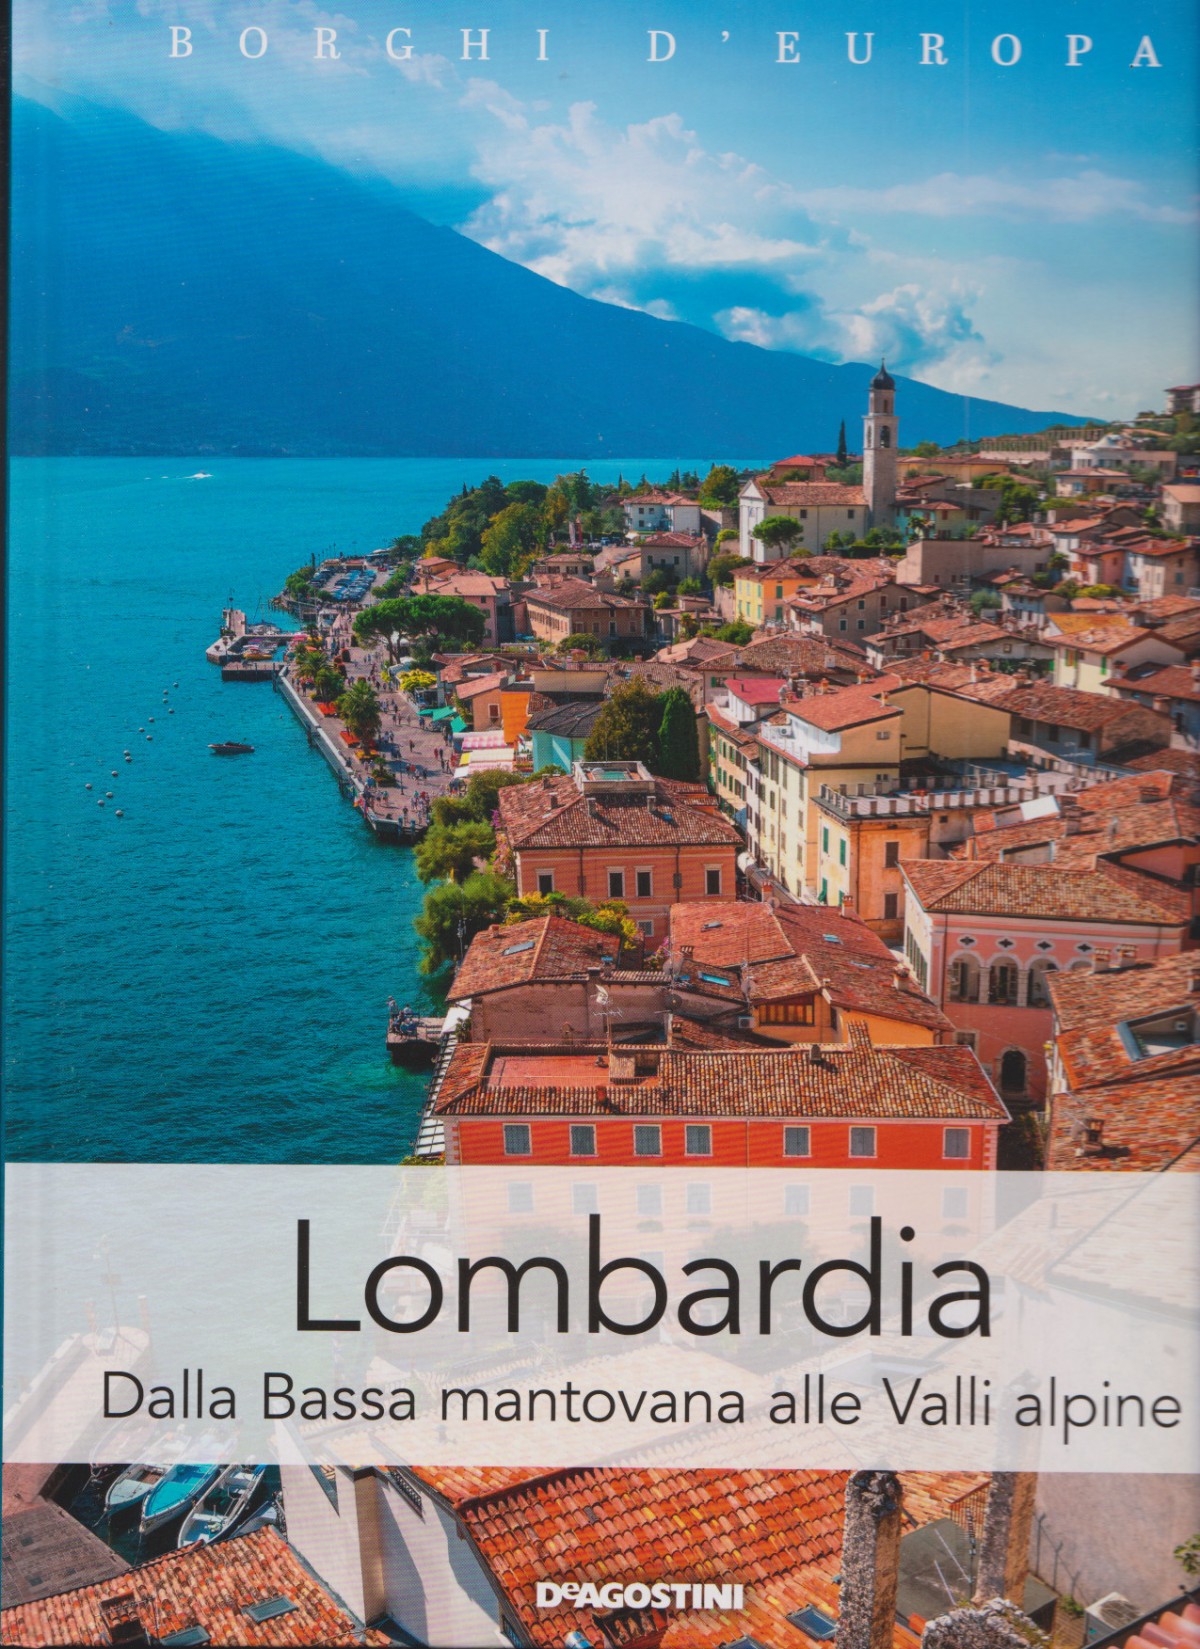 Borghi d’Europa (a cura di), Lombardia. Dalla Bassa mantovana alle Valli alpine, De Agostini, 2019